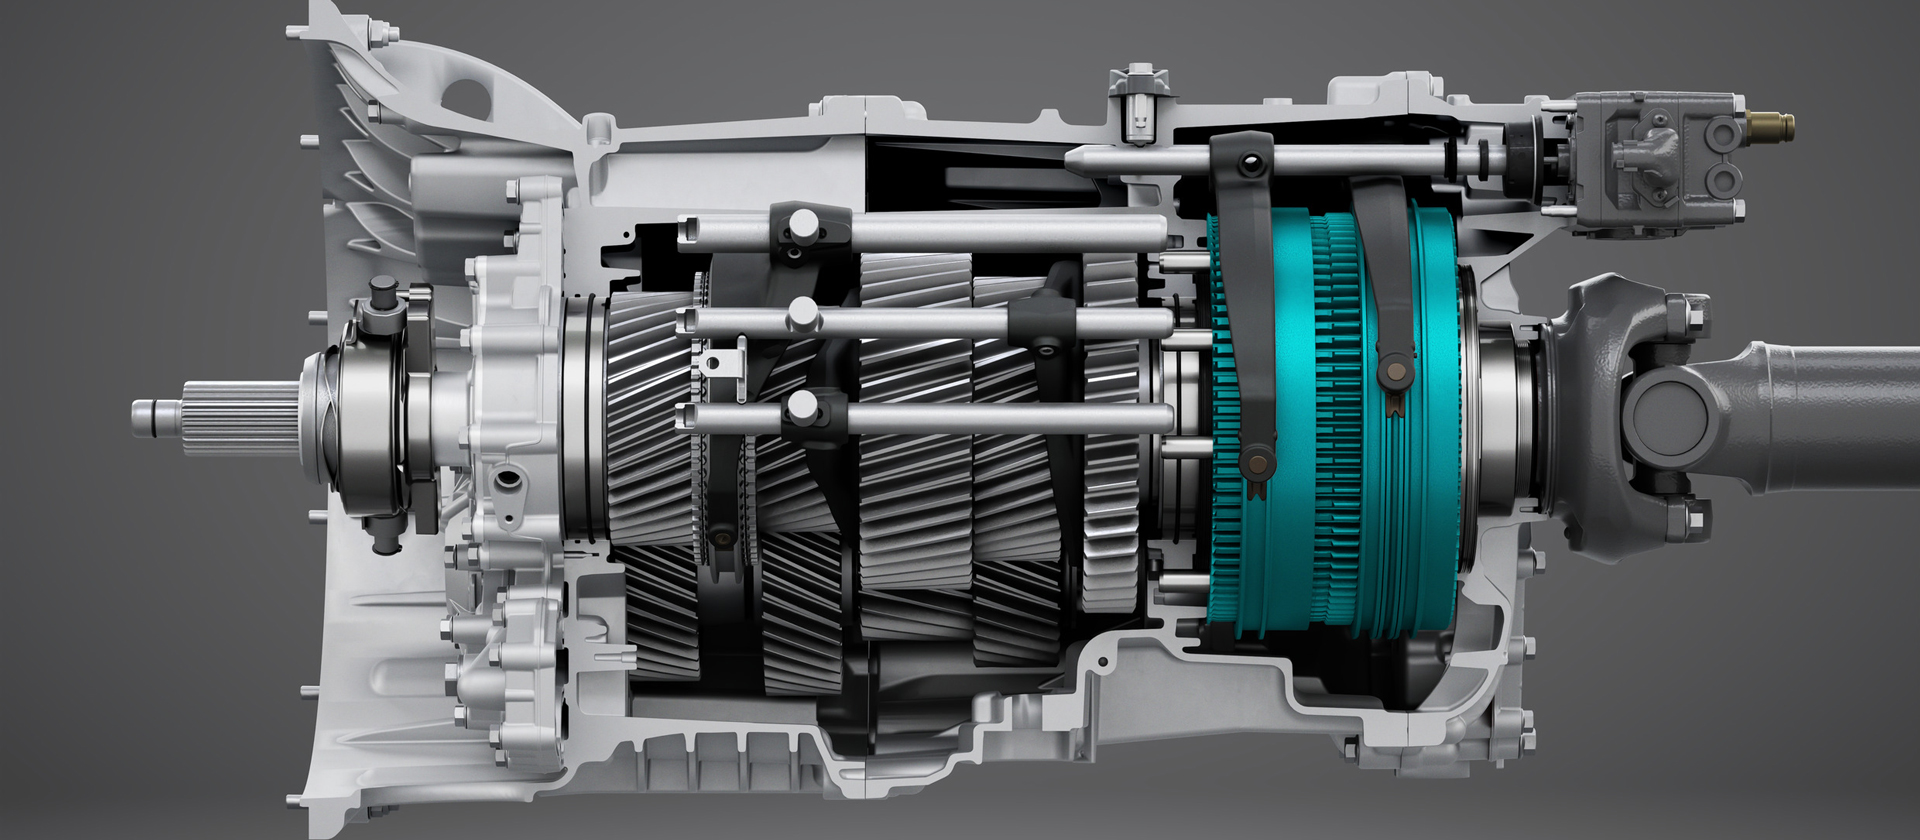 Scania introduce i nuovi cambi per applicazioni estremamente gravose: l'ampia rapportatura interna permette di sfruttare al meglio il motore